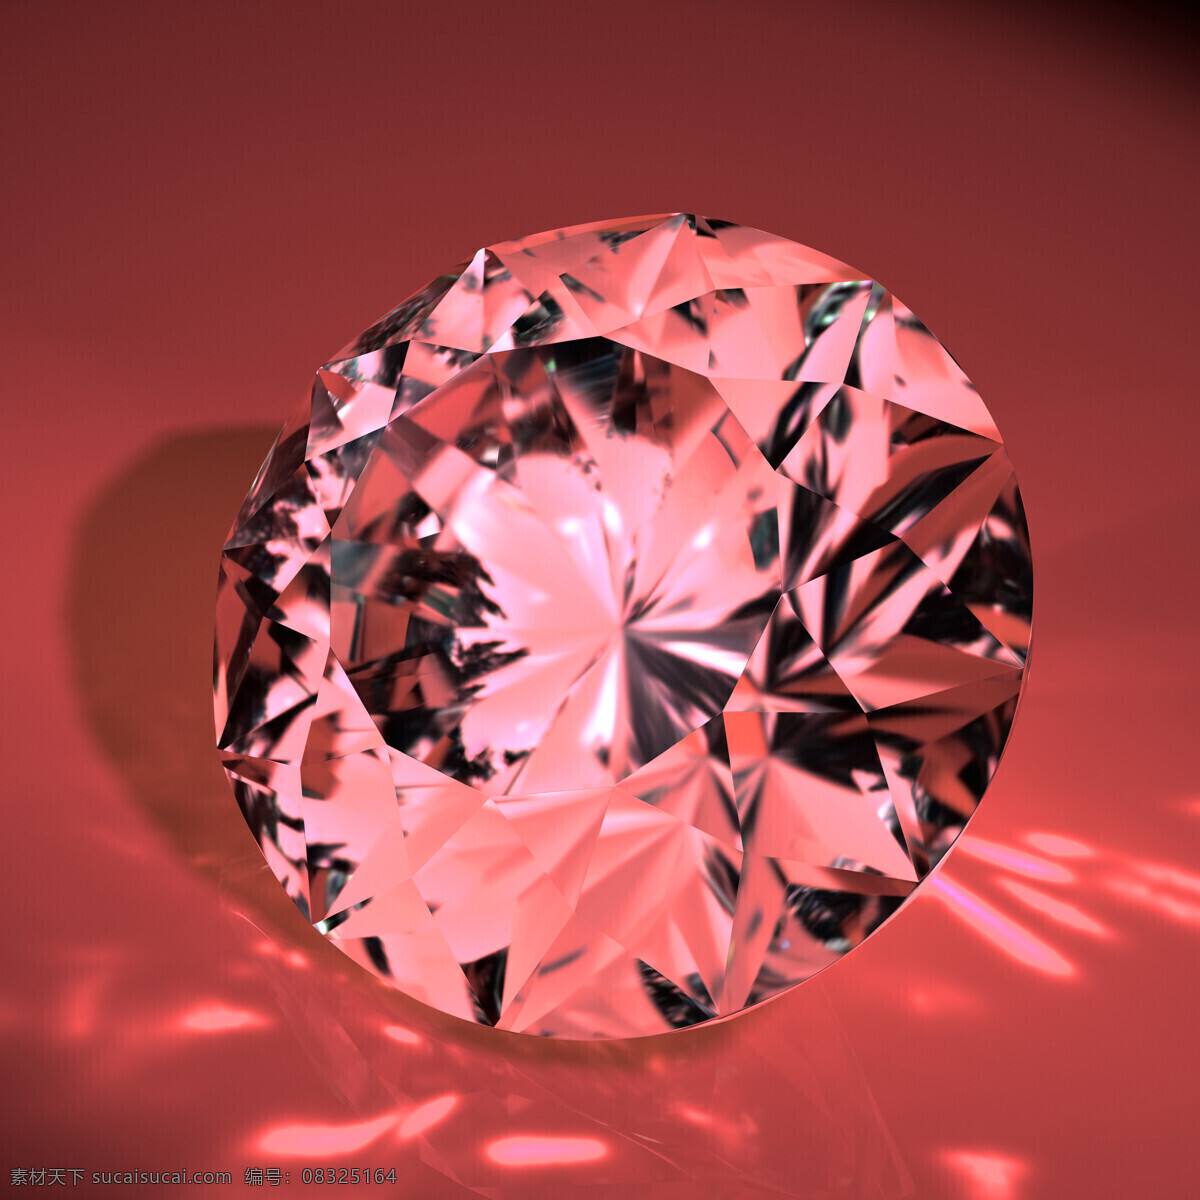 晶莹 剔透 蓝色钻石 大钻石 钻石素材 白色钻石 宝石 珠宝 南非钻石 心形钻石 金刚石 裸钻 彩钻 钻戒 生活百科